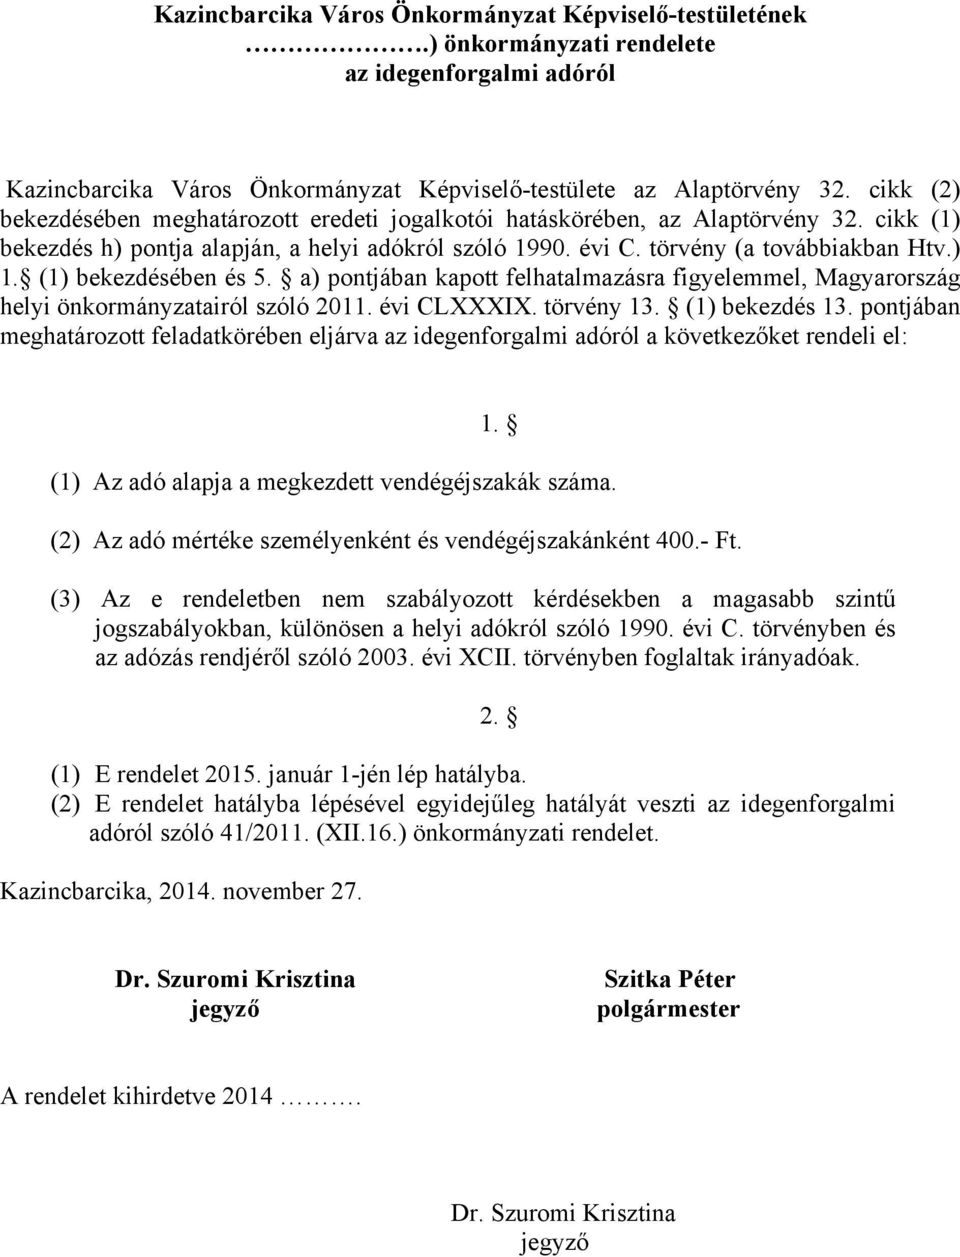 (1) bekezdésében és 5. a) pontjában kapott felhatalmazásra figyelemmel, Magyarország helyi önkormányzatairól szóló 2011. évi CLXXXIX. törvény 13. (1) bekezdés 13.